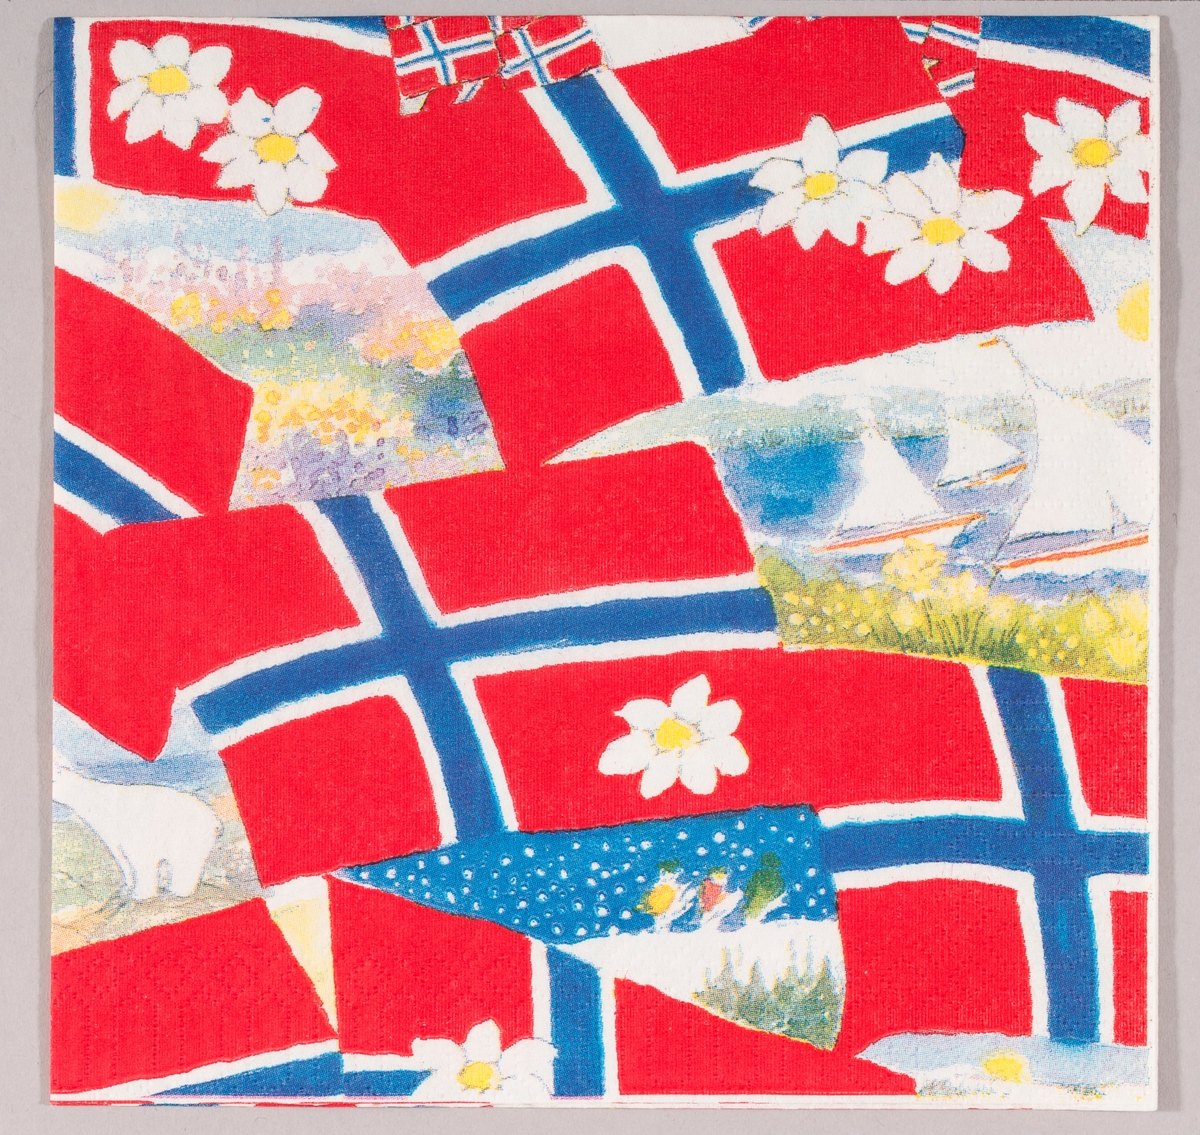 Norske flagg, hvite blomster og motiver med sommerlandskaper, båter i sjøen og vinterlandskaper.